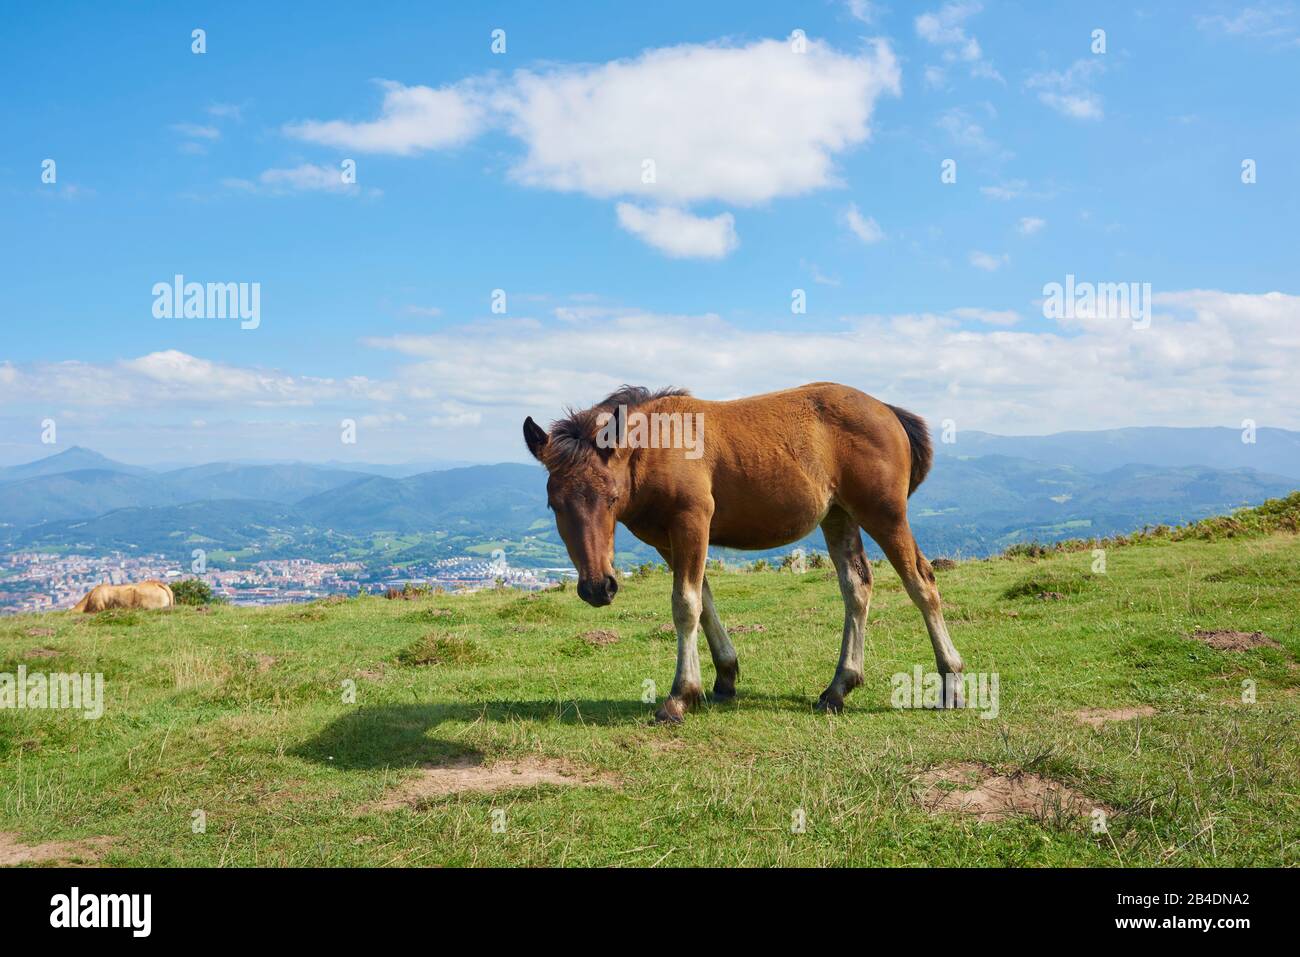 Pferdefohlen (Equus ferus caballus) stehen auf einer Almwiese am Jizkibel Berg am Jakobsweg, Baskenland, Spanien Stock Photo